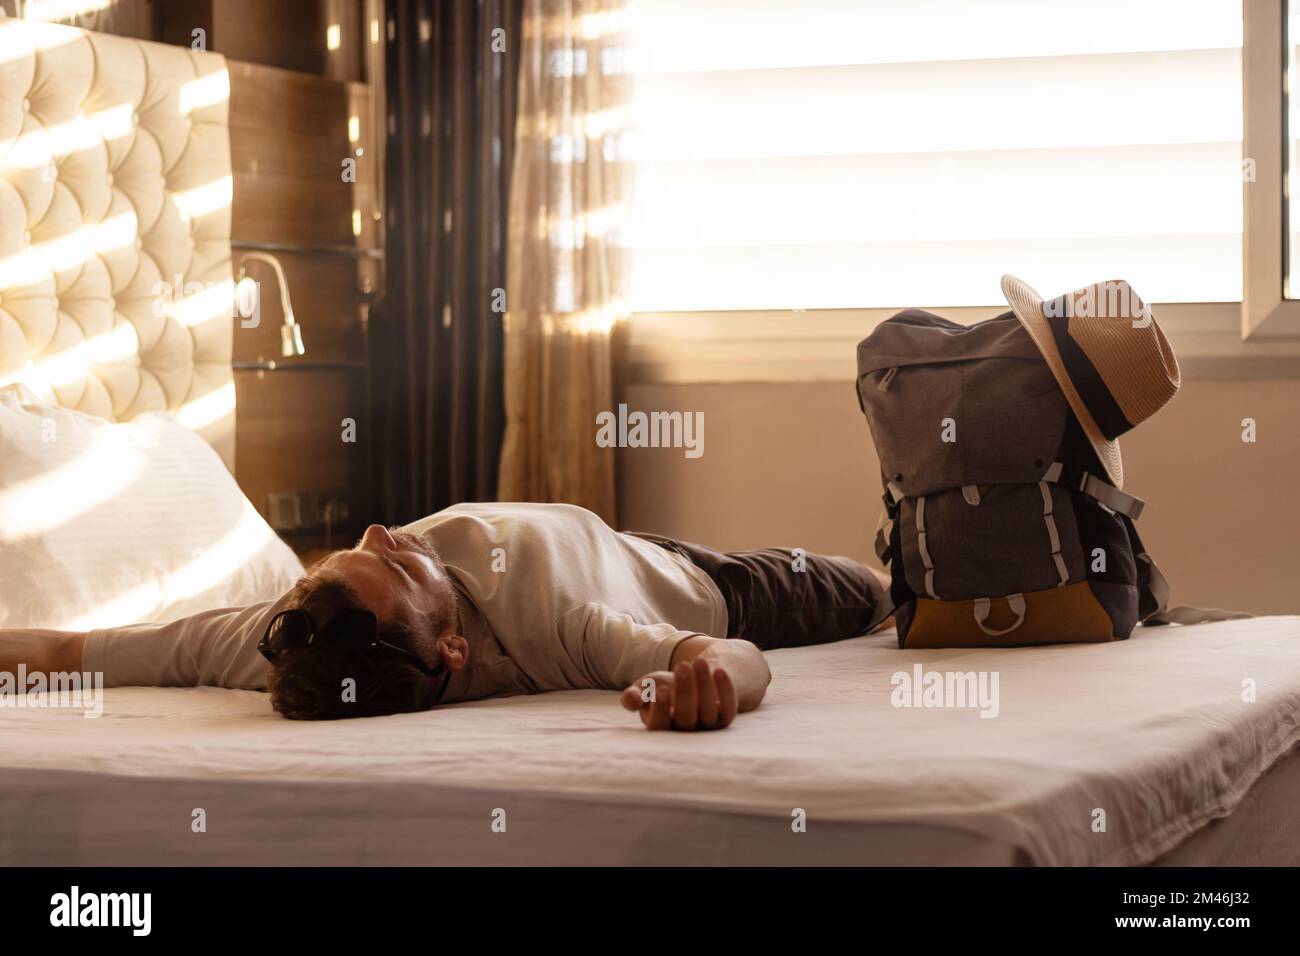 Un touriste mâle fatigué couché après l'enregistrement sur le lit dans une chambre d'hôtel, vacances, repos et récupération concept. Banque D'Images